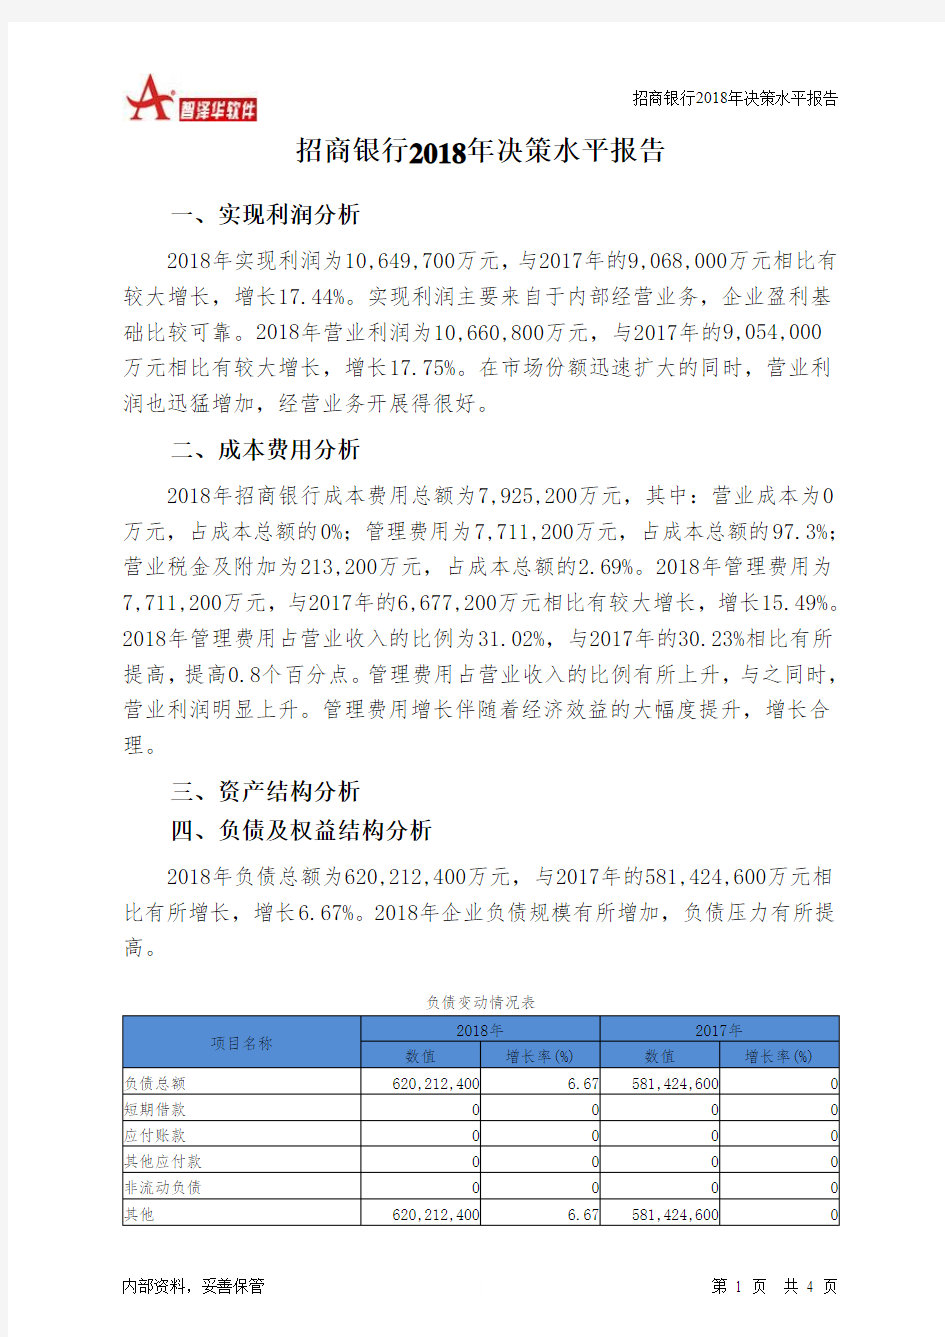 招商银行2018年决策水平分析报告-智泽华